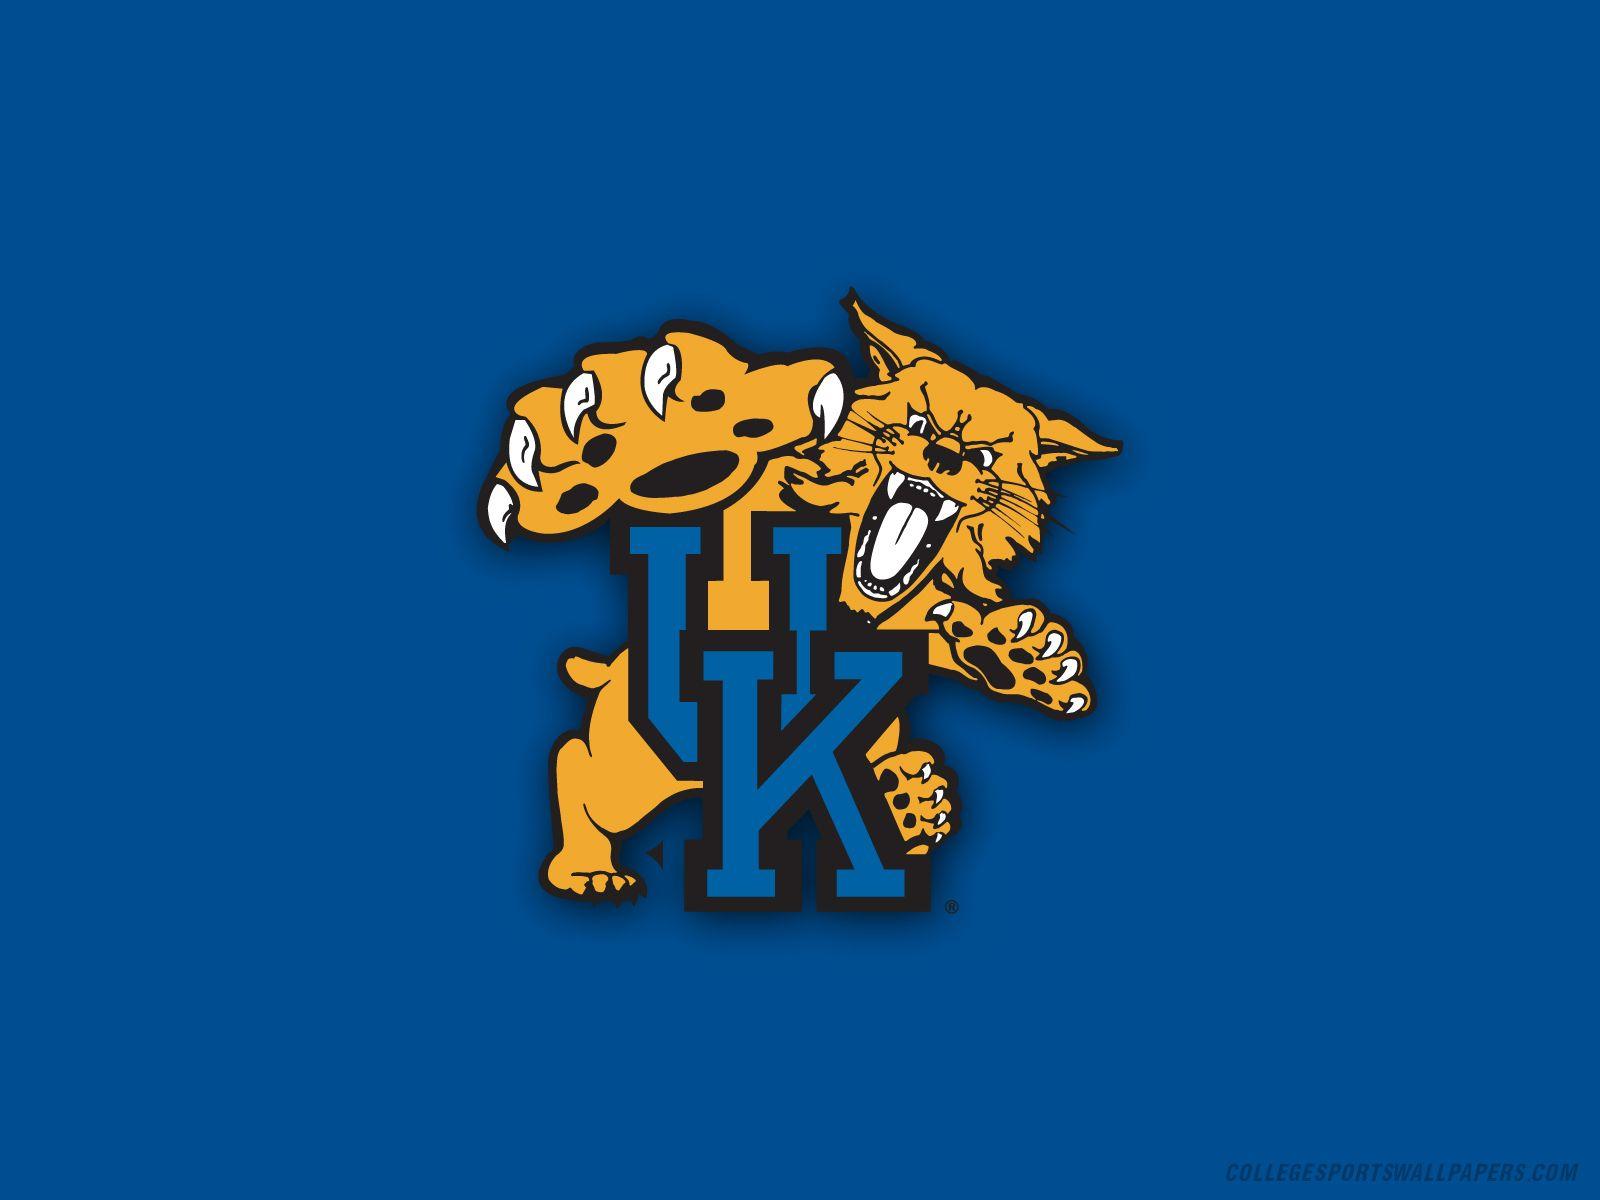 Kentucky Wildcats là một đội bóng rổ thực sự đáng xem và hấp dẫn. Với các hình nền của đội bóng này, bạn sẽ được chiêm ngưỡng logo, hình ảnh tuyệt đẹp của từng chiến thắng và người chơi tài năng đại diện cho đội bóng này. Hãy trang trí màn hình của mình với những hình ảnh này và hòa cùng không khí sôi động bên Kentucky Wildcats.